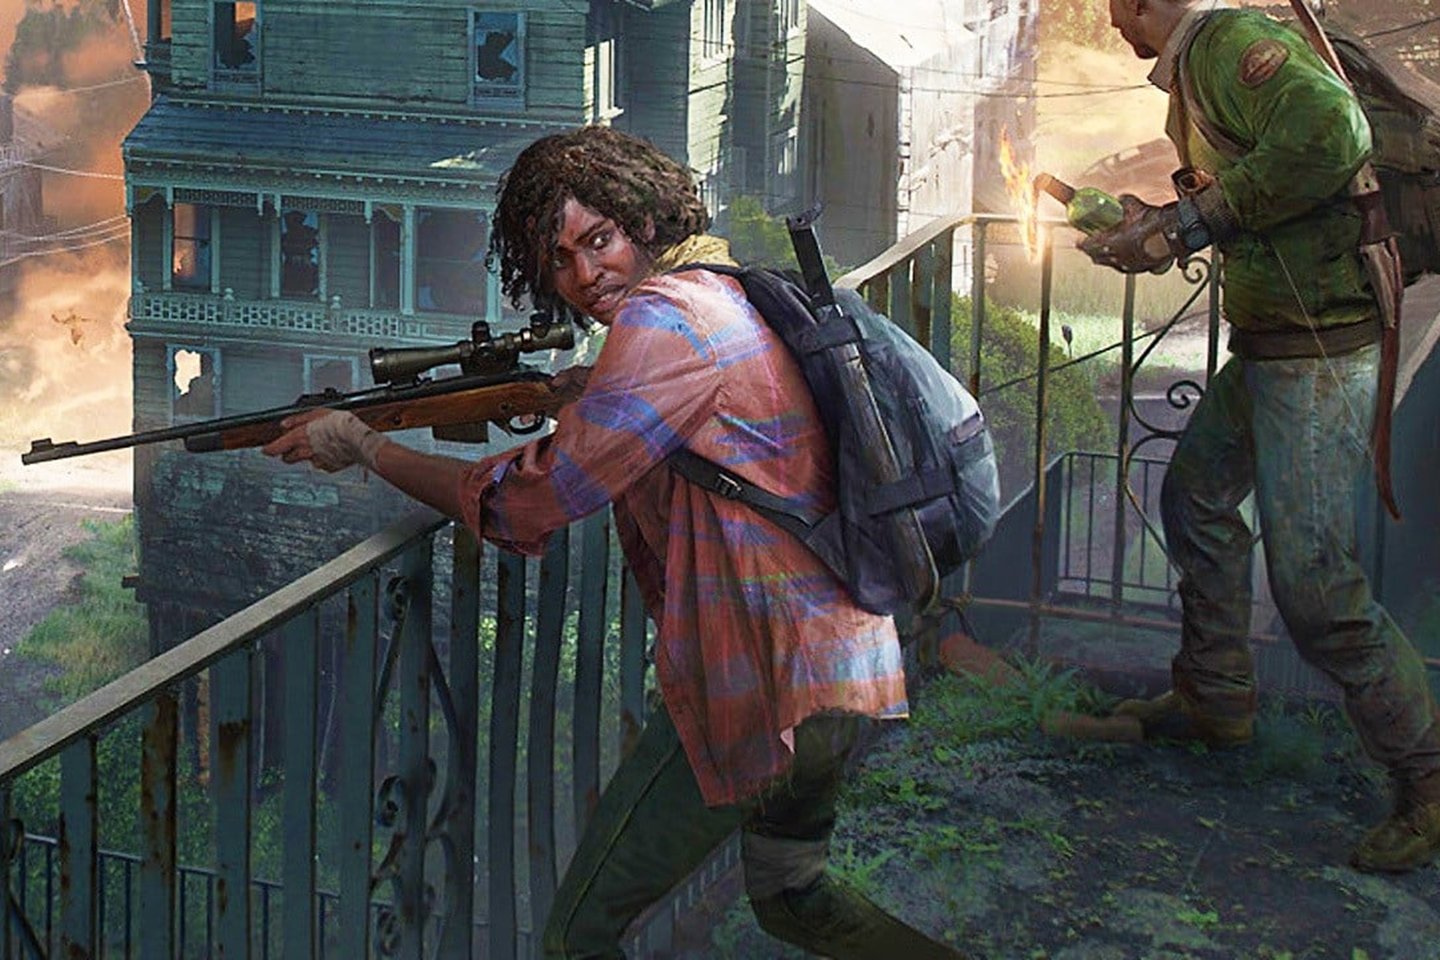 Arte oficial do novo multiplayer de The Last of Us, que ainda não tem previsão de lançamento.